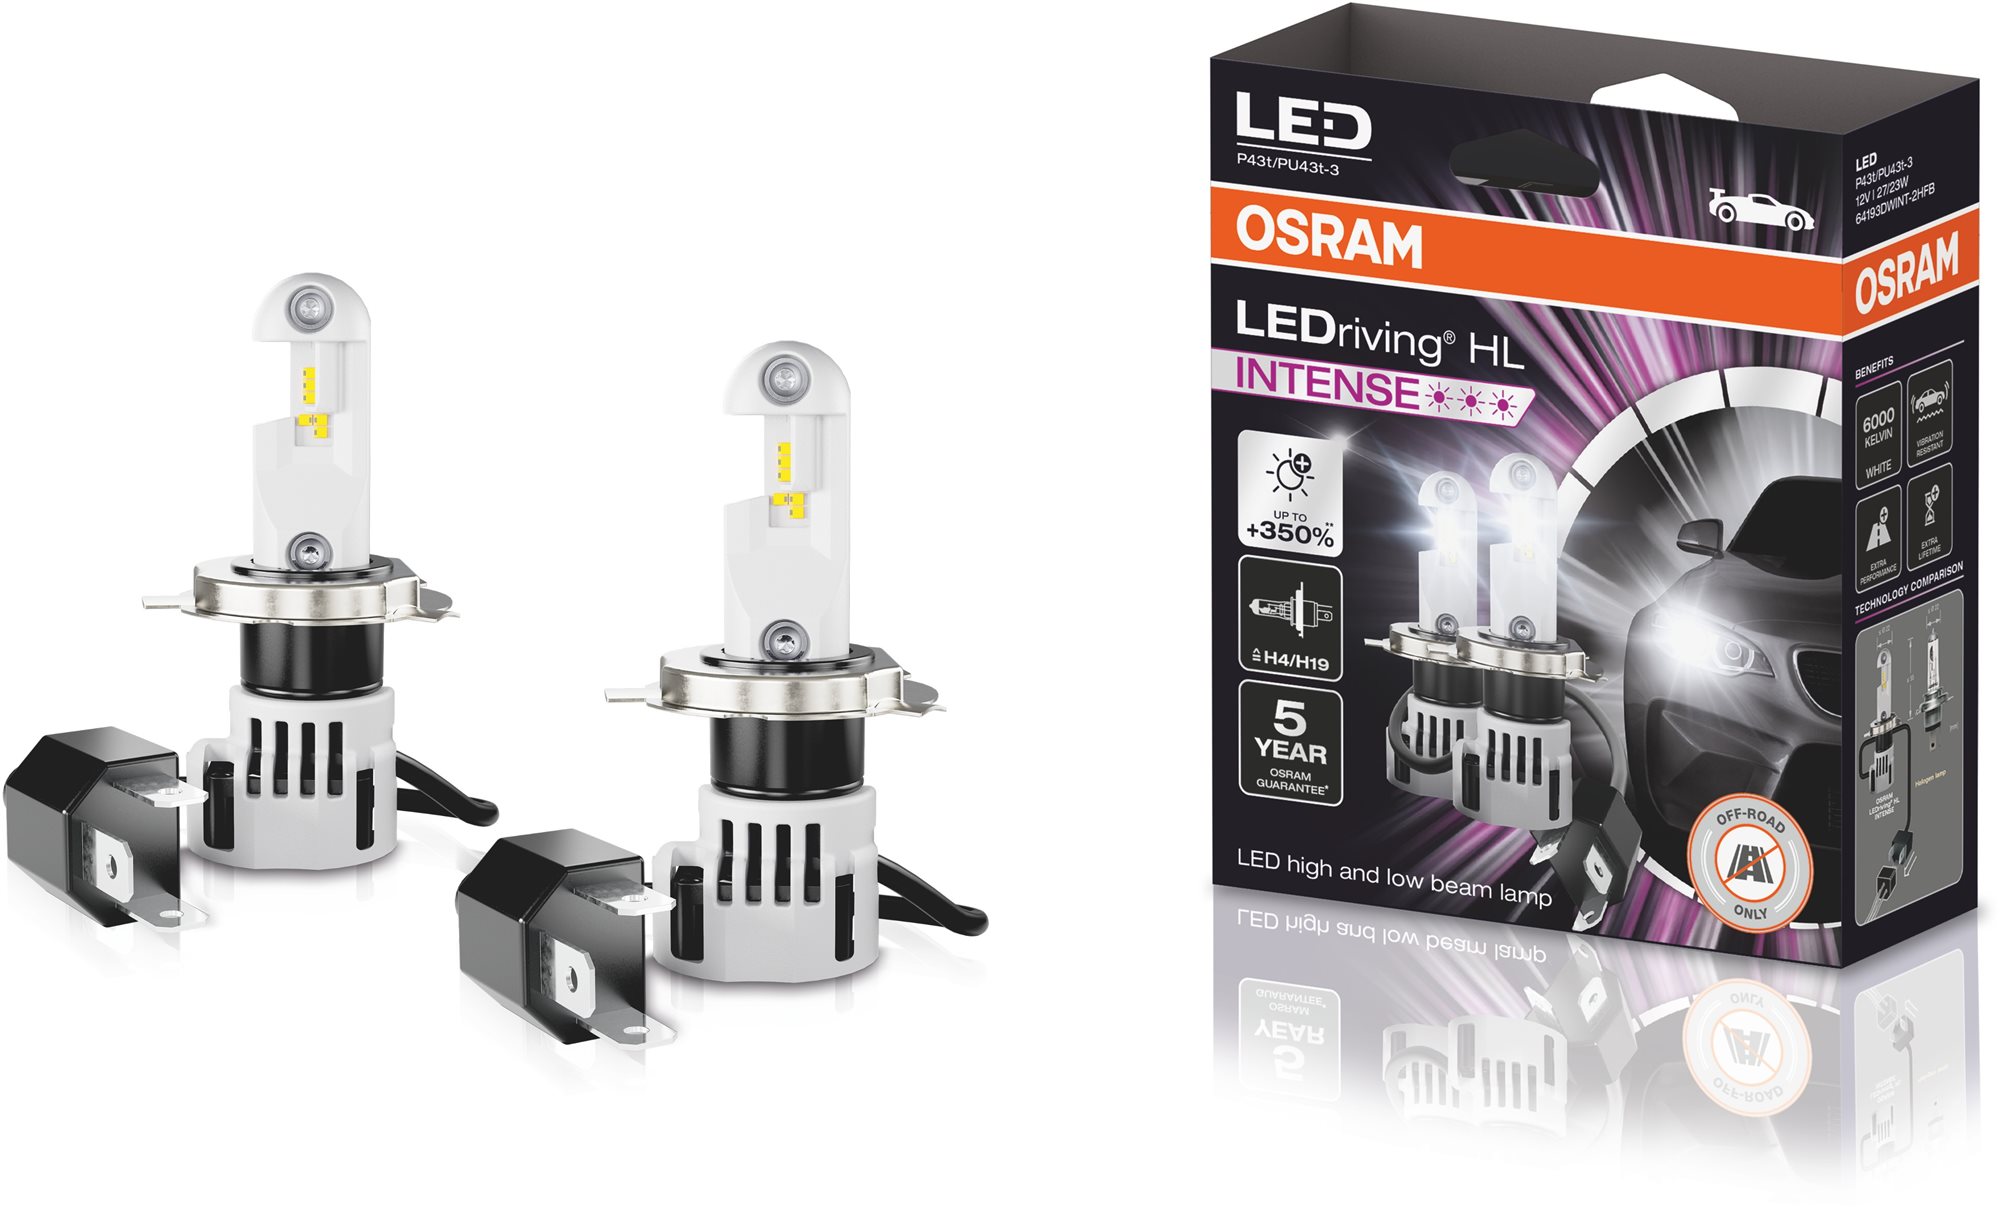 OSRAM LEDriving HL INTENSE +350% 